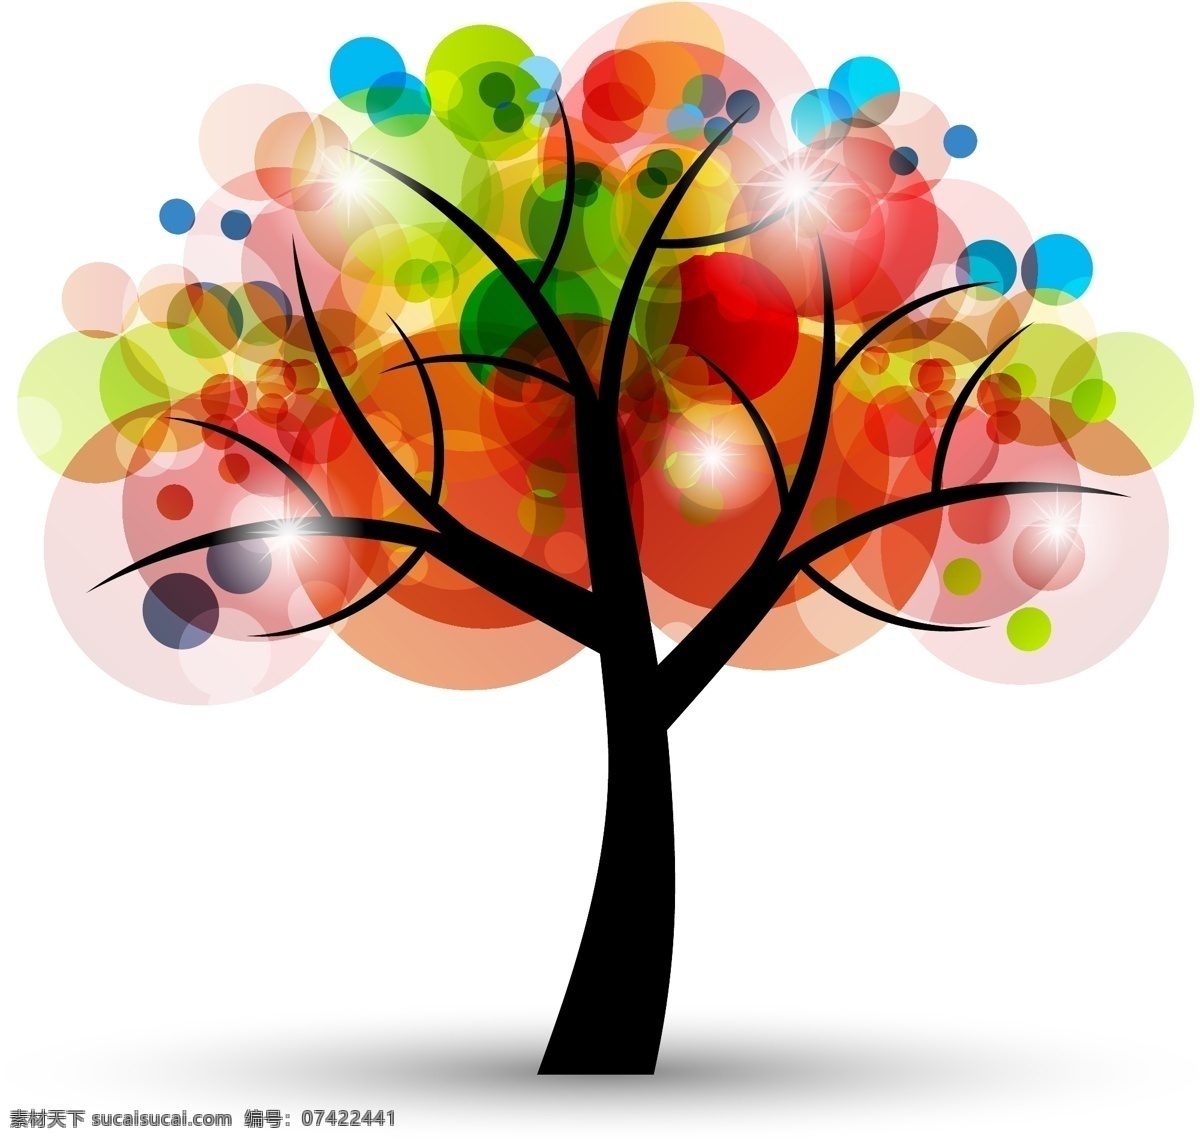 多彩 创意 树 矢量 五彩 梦幻创意树 矢量素材 彩色 树叶 点光 多彩树 多彩创意树 其他设计 其他矢量